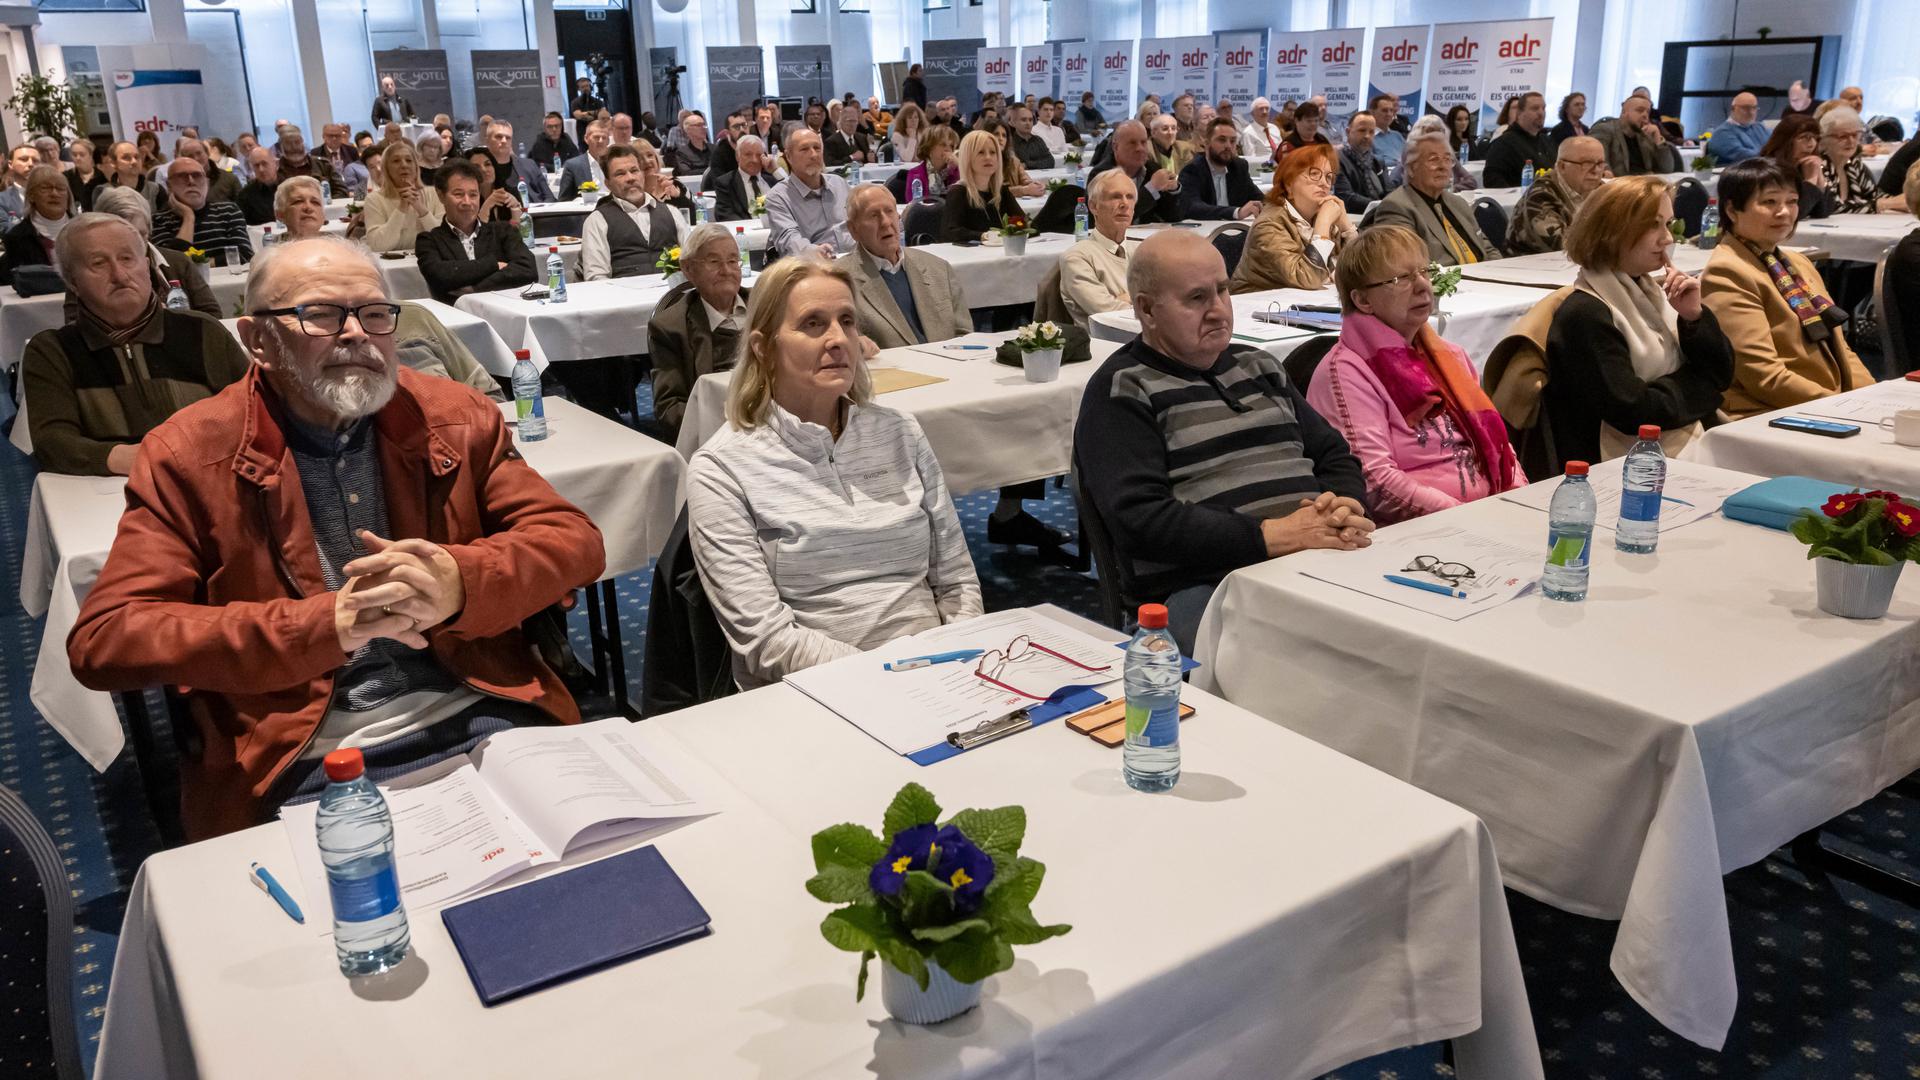 Environ 200 membres du parti étaient présents au congrès national de l'ADR à Dommeldange. 